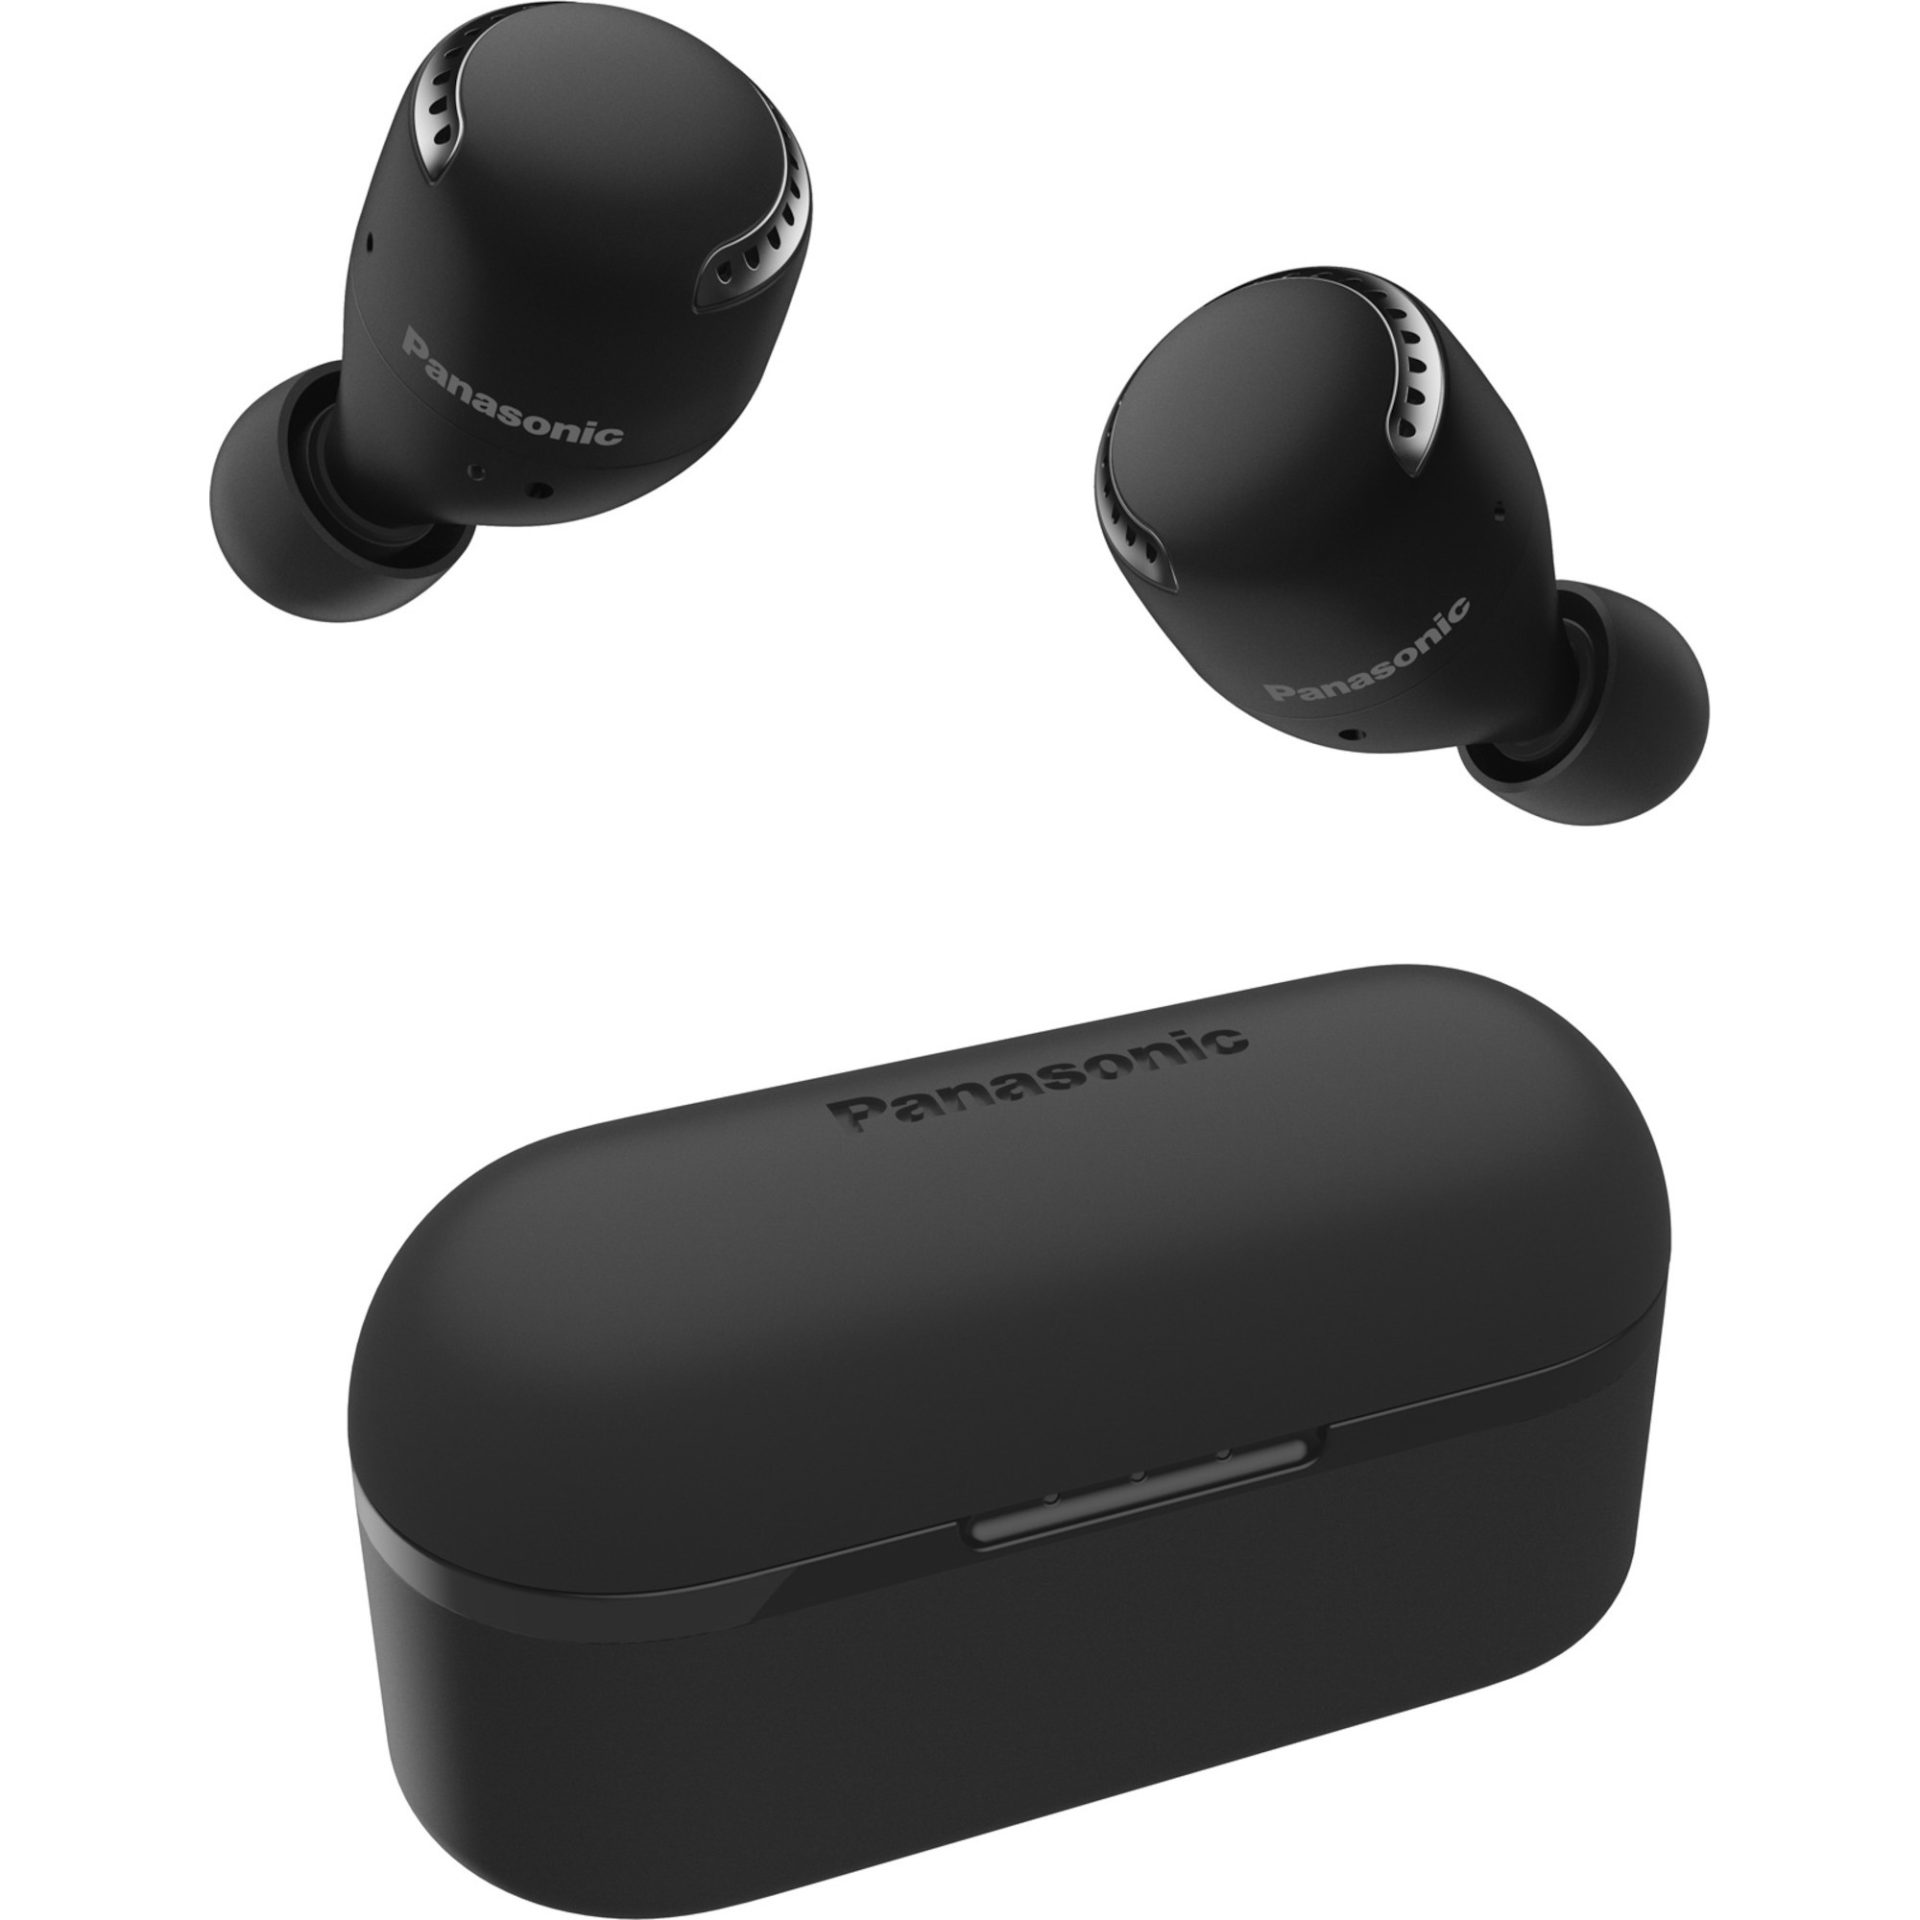 Panasonic RZ-S500 sluchátka True Wireless do uší s redukcí šumu (Bluetooth, mikrofon MEMS, přehrávání 19,5h s nabíjecím pouzdrem, IPX4), černá